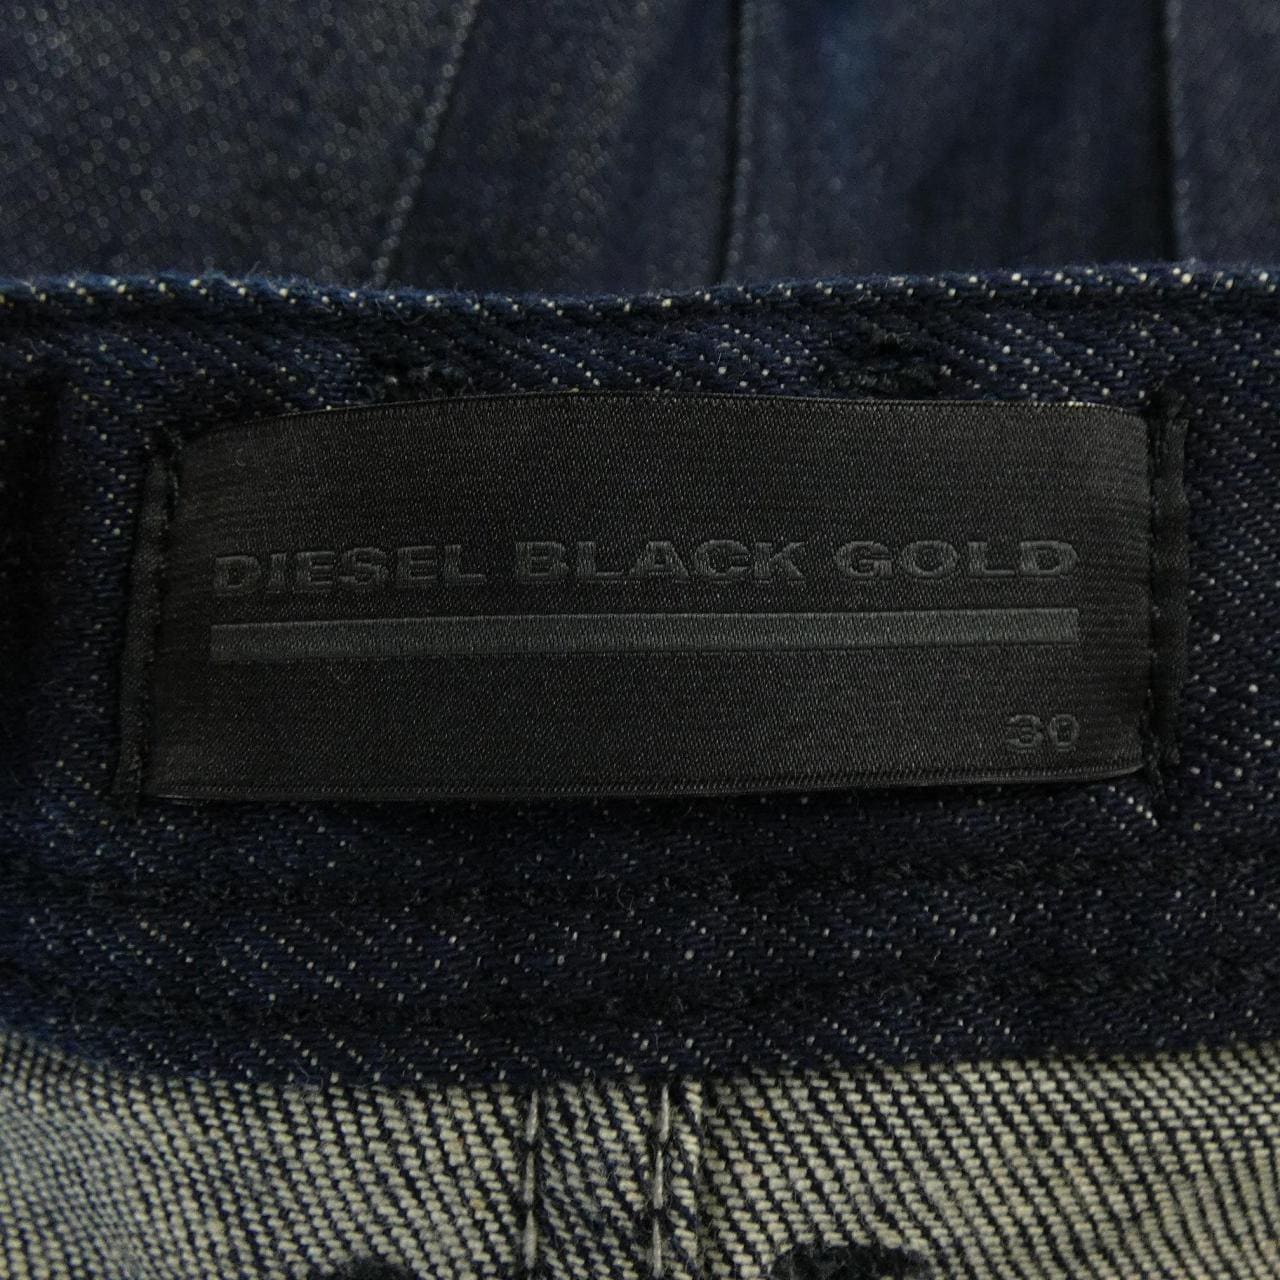 Diesel black gold DIESEL BLACK GOLD jeans